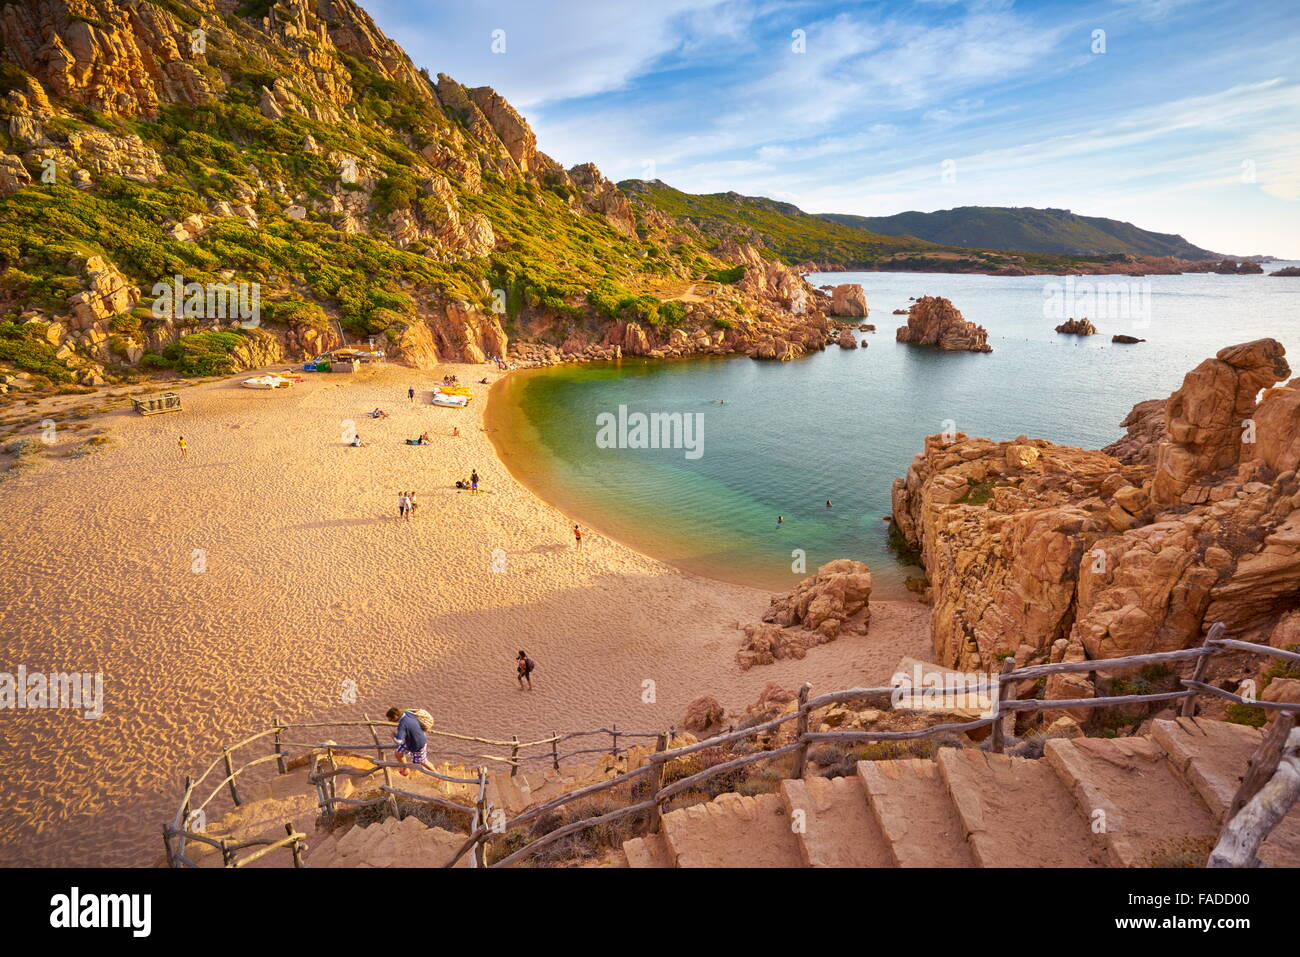 Sardinia Island - Costa Paradiso Beach, Italy Stock Photo